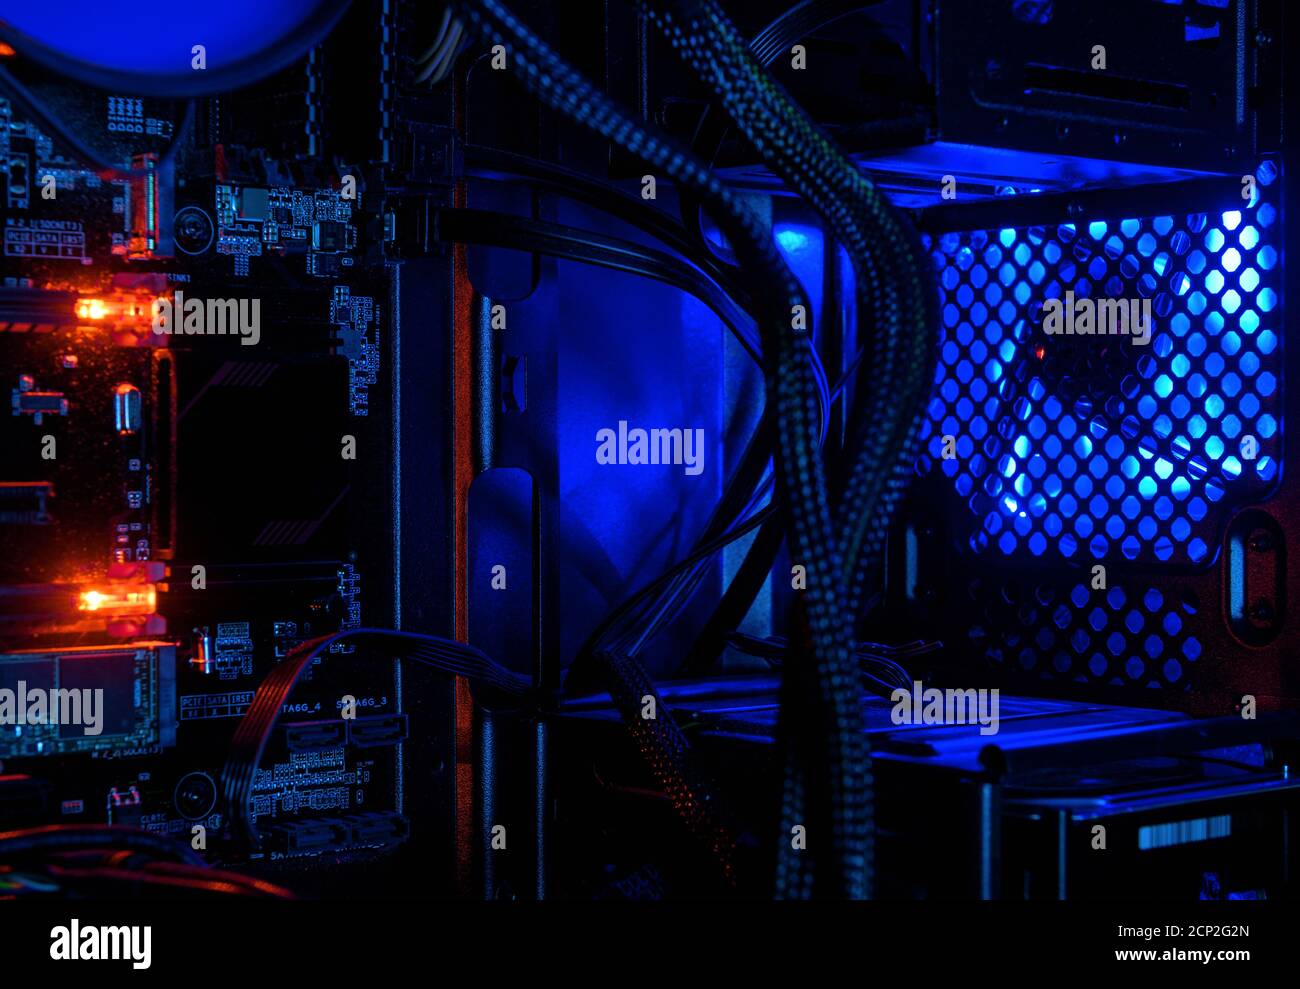 Computer beleuchtet durch interne LED RGB-Leuchten, Hardware im offenen Hochleistungs-Desktop-PC. Der offene Turm von Gaming-Computer für Tapeten. Co Stockfoto